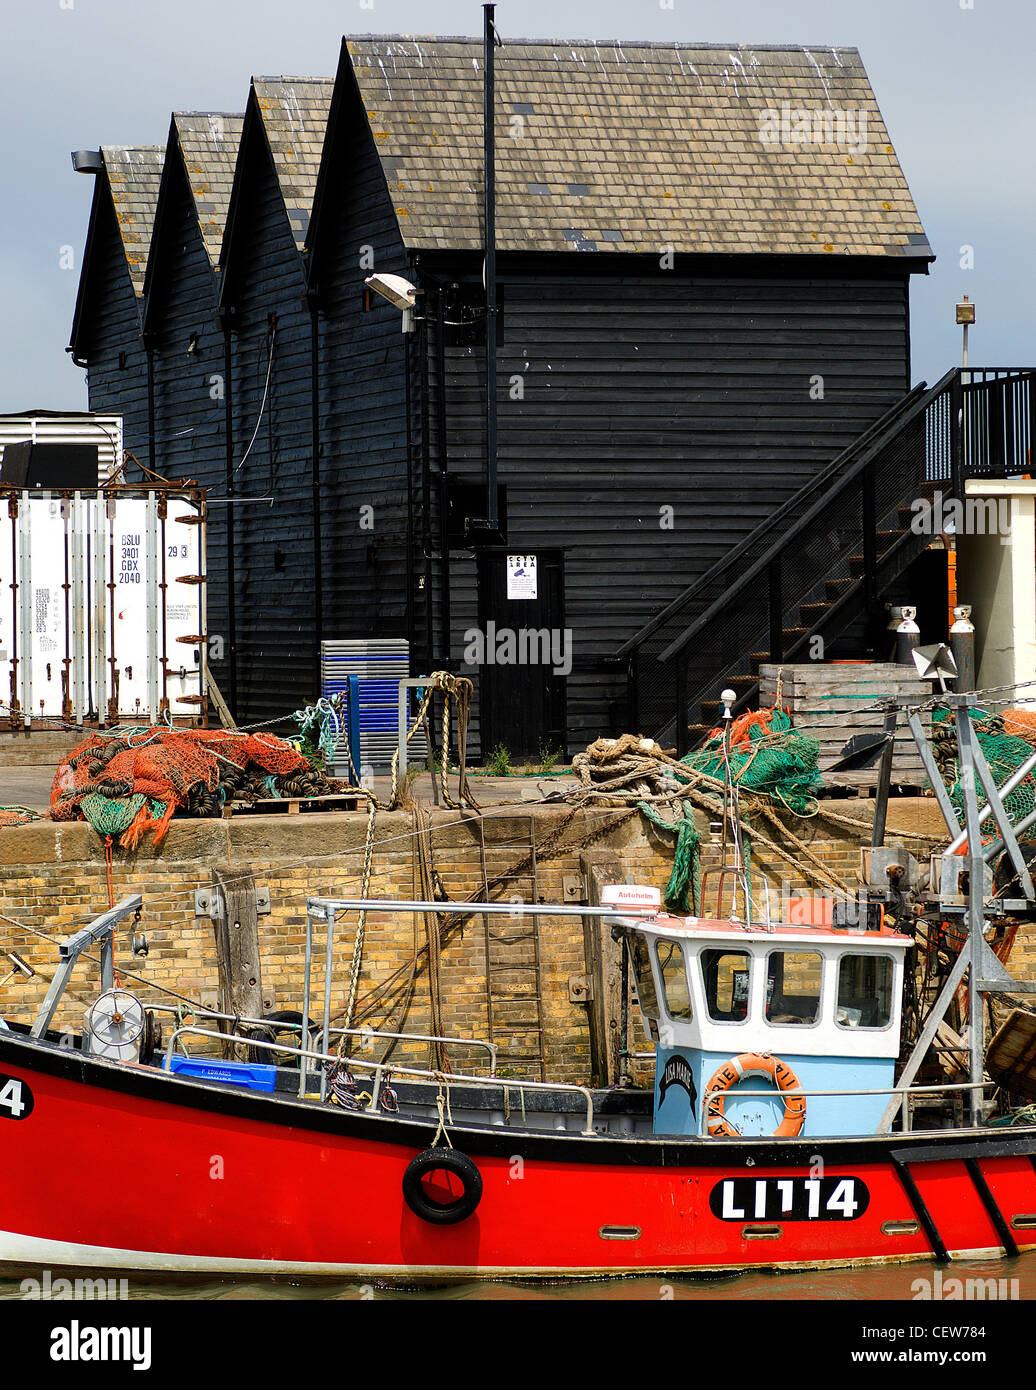 Eine moderne Fischerboot vor Anker in Whitstable, Kent, vor einigen der traditionellen Auster Schuppen für die die Stadt berühmt ist. Stockfoto